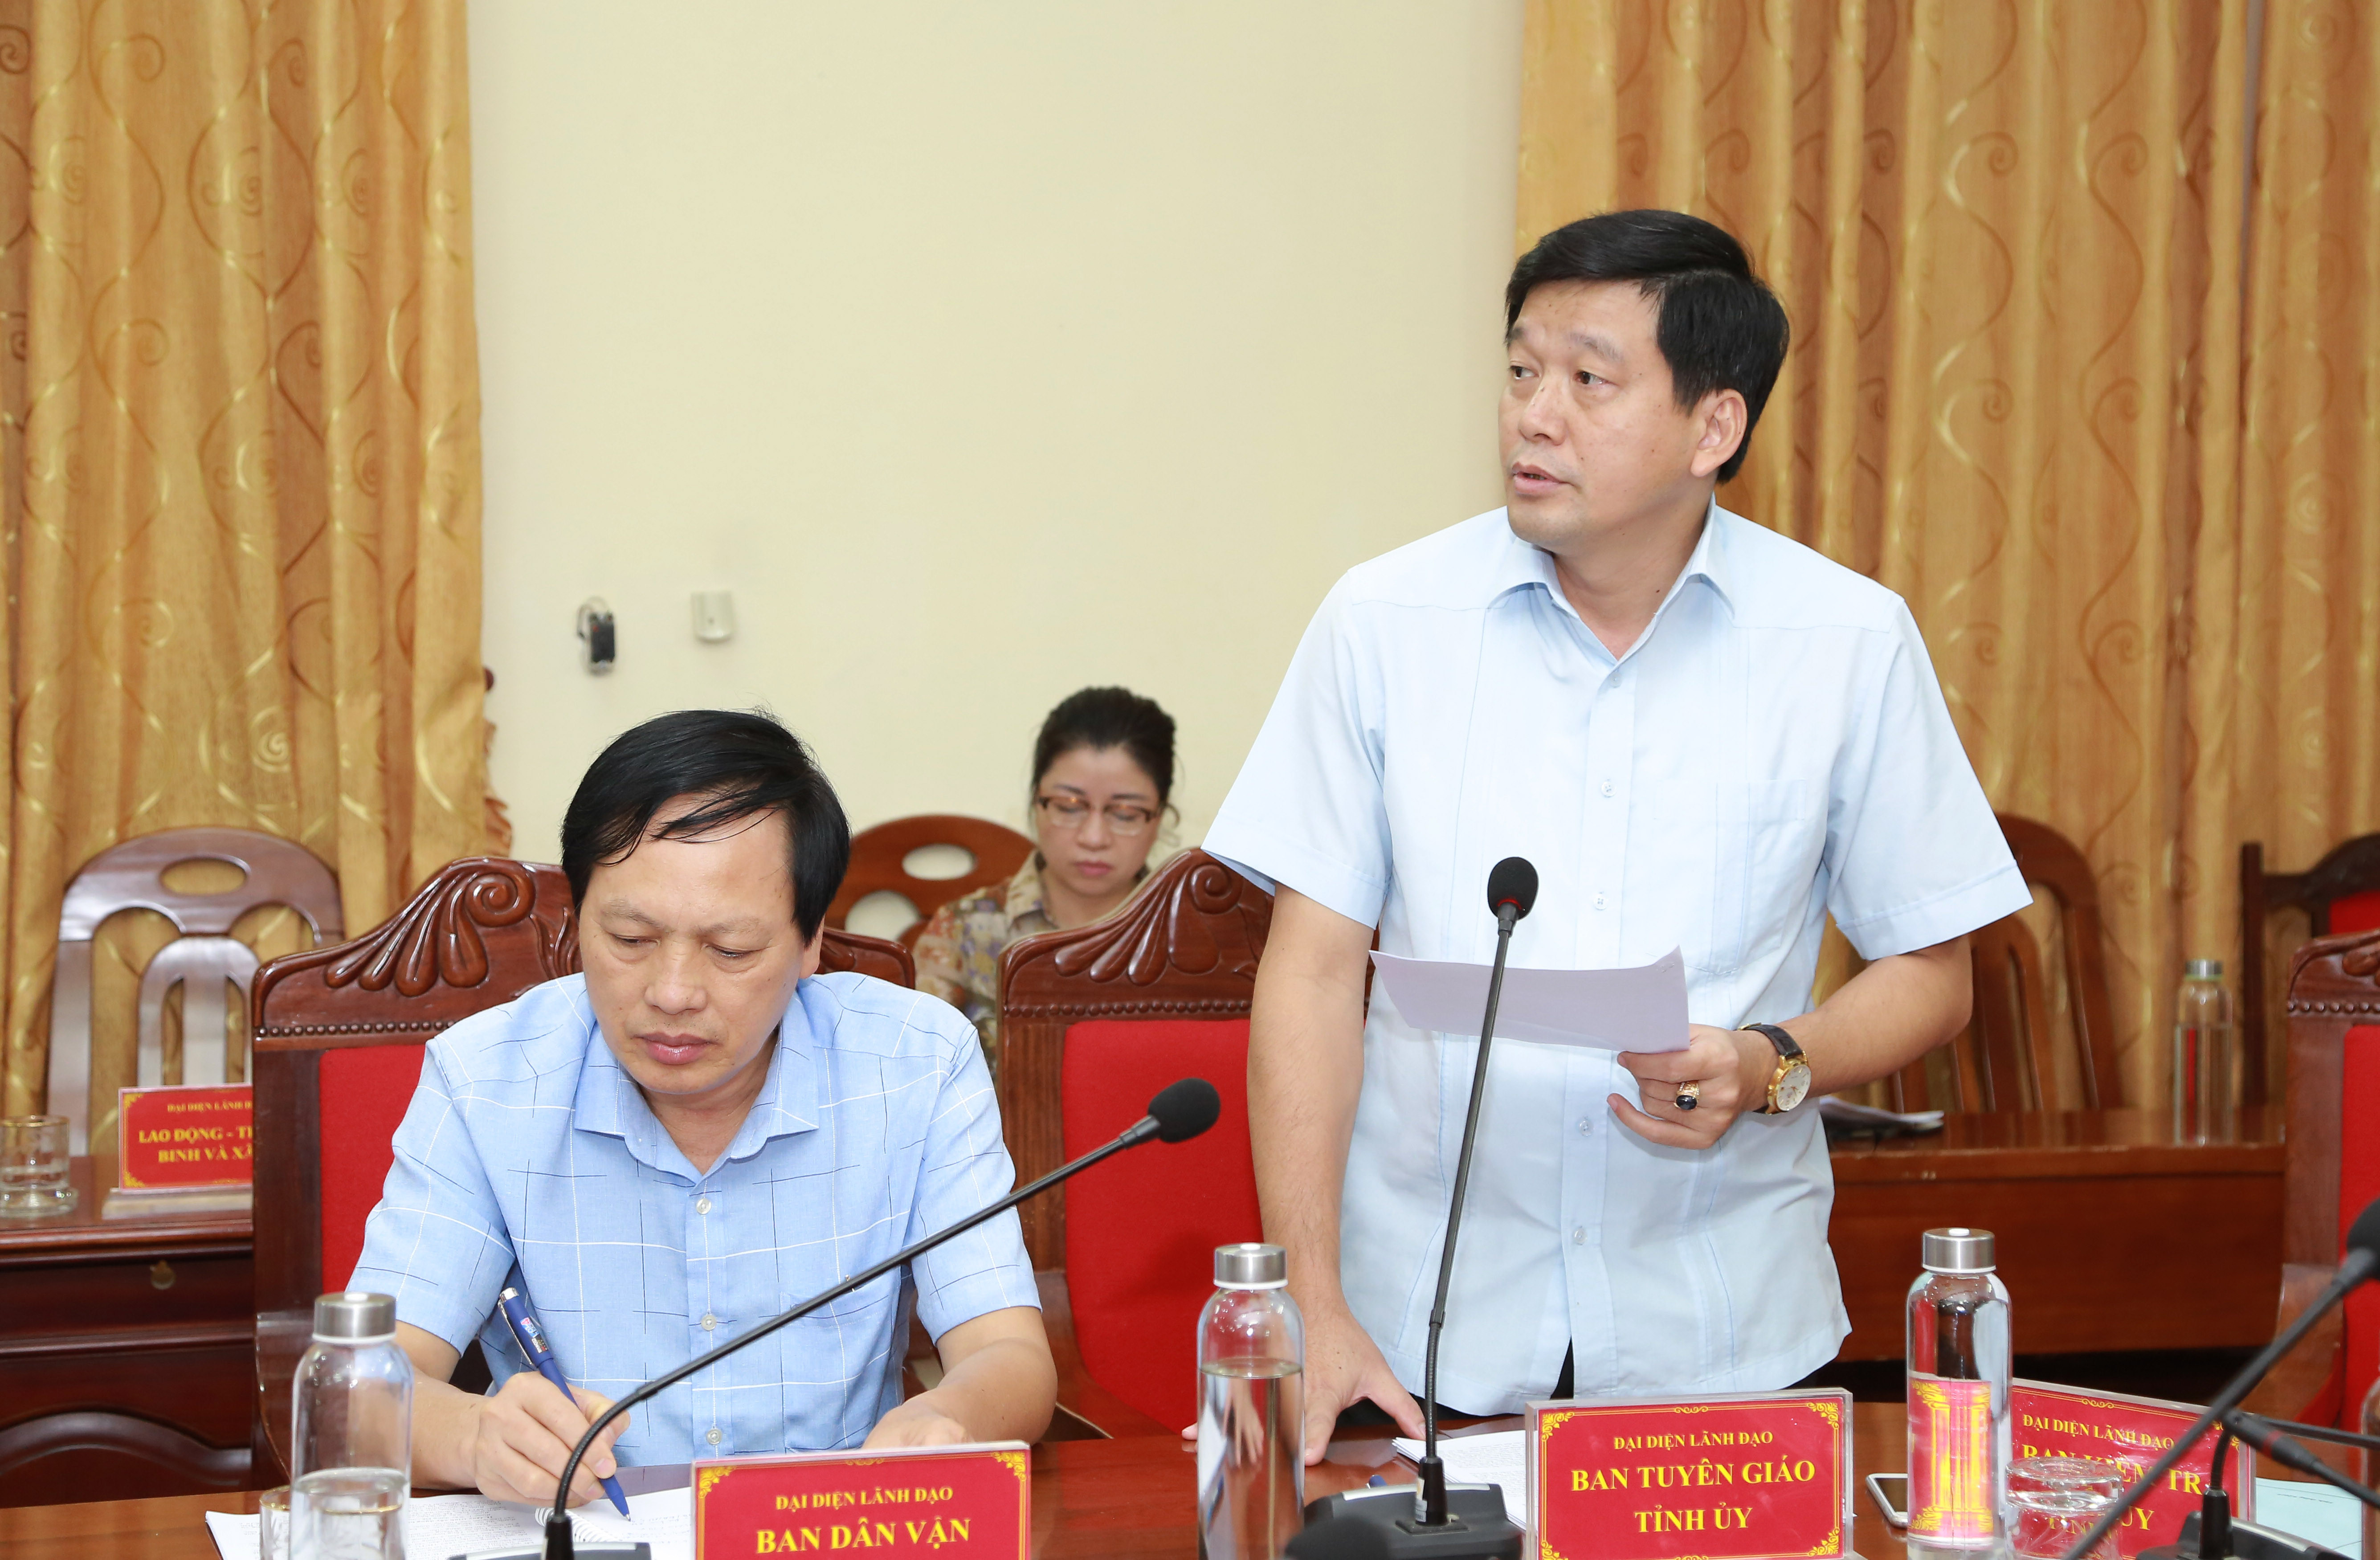 Đồng chí Kha Văn Tám - Phó Trưởng ban Tuyên giáo Tỉnh ủy phát biểu tại buổi làm việc. Ảnh: Đào Tuấn